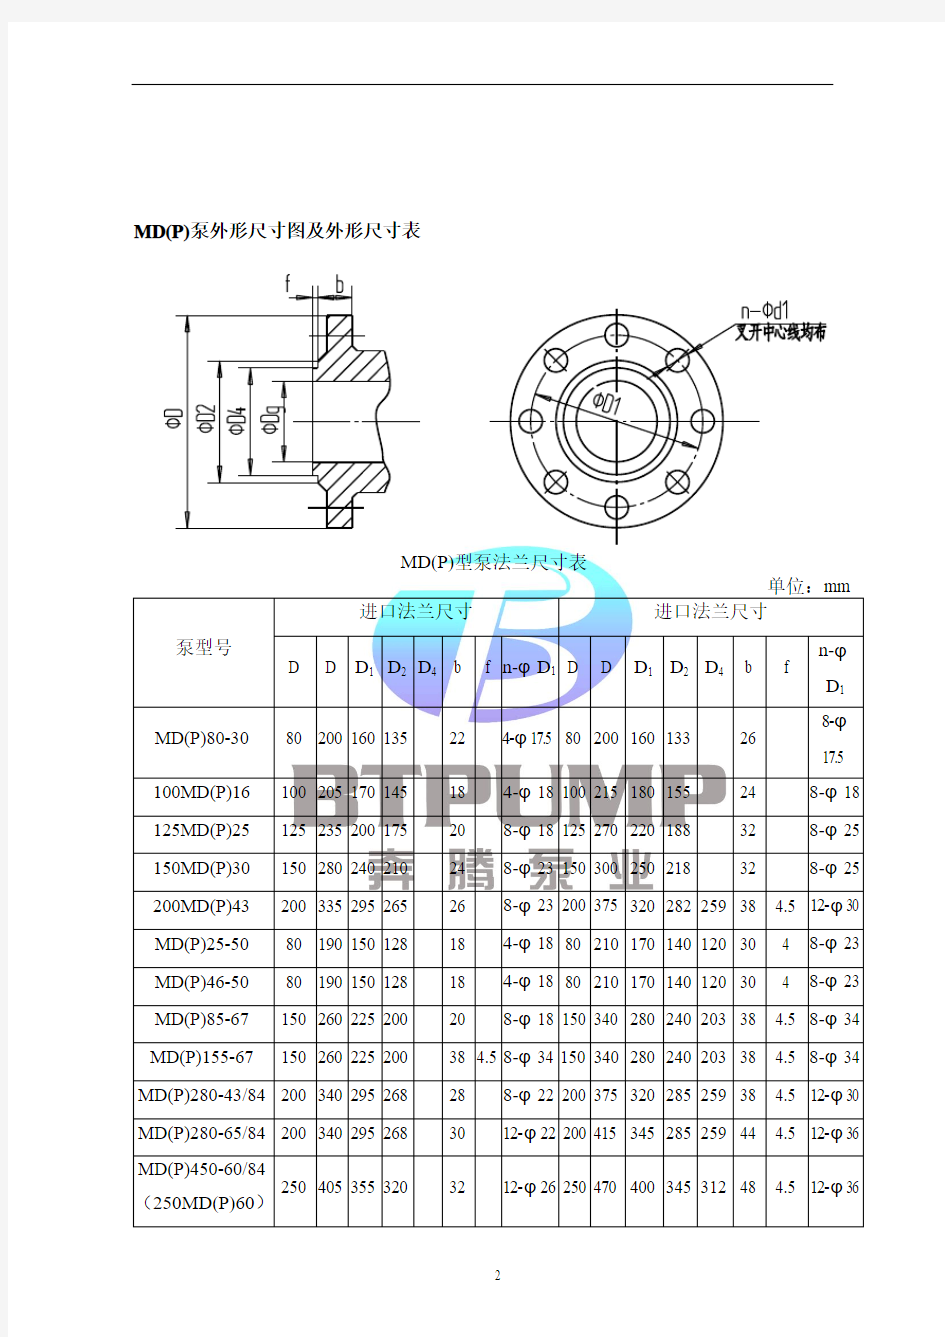 MD(P)280-43自平衡多级泵性能参数表-长沙奔腾泵业